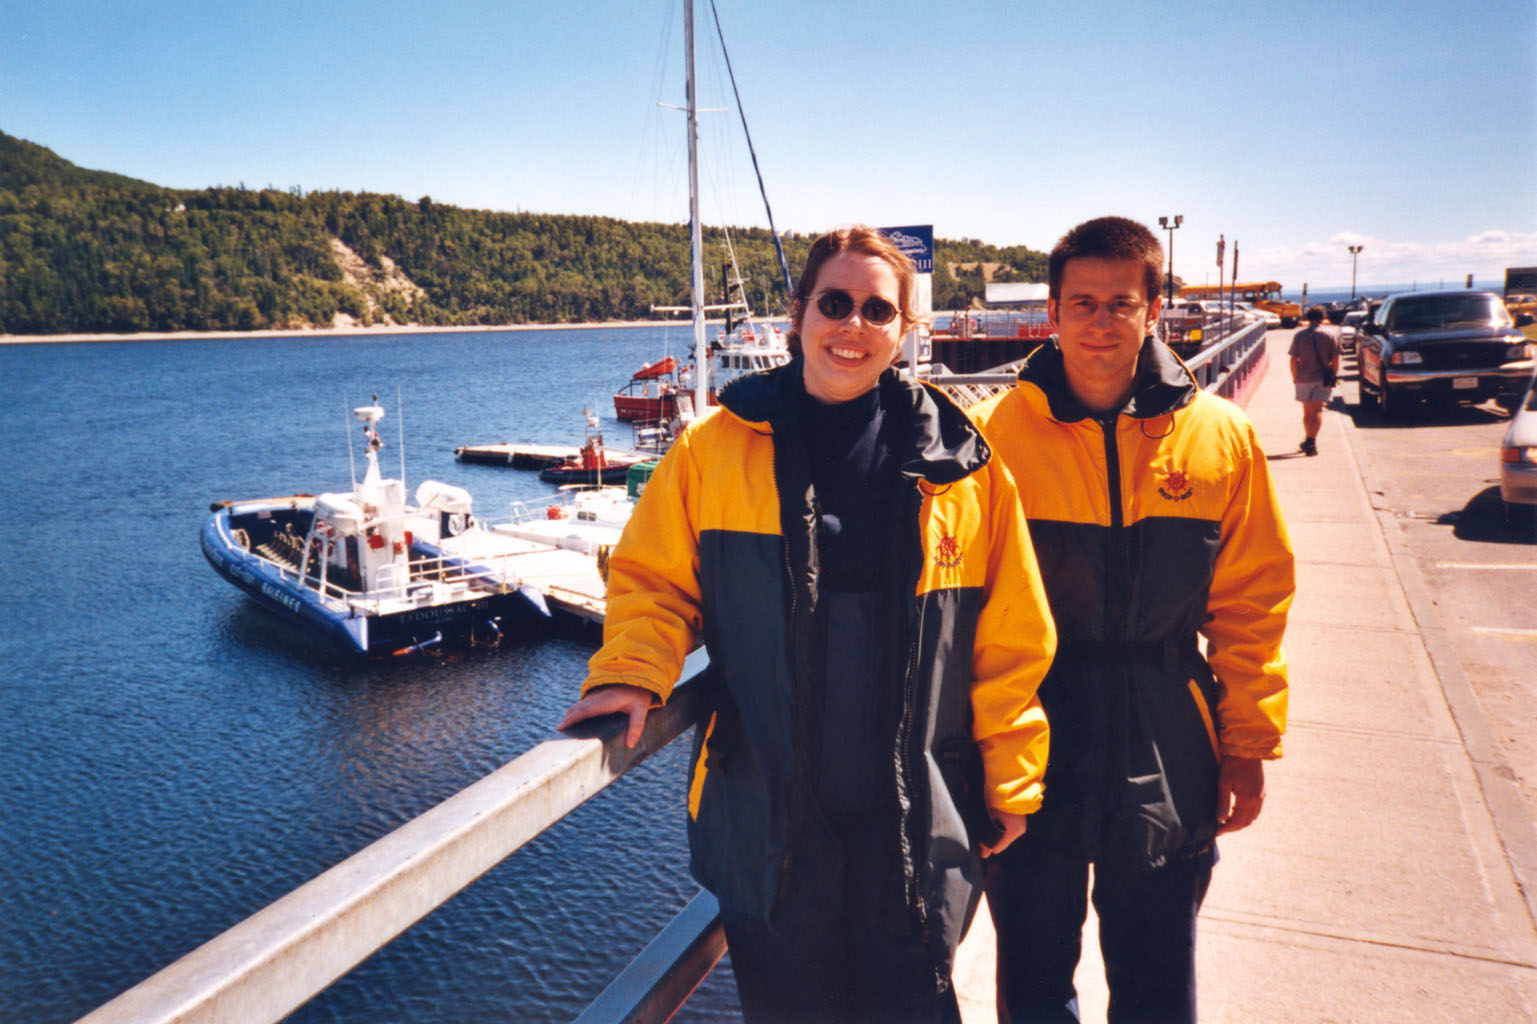 Voyage à Tadoussac (2002) de Catherine, Philippe et Sébastien (qui prend la photo) pour voir les baleines à bord du bâteau visible en arrière-plan.